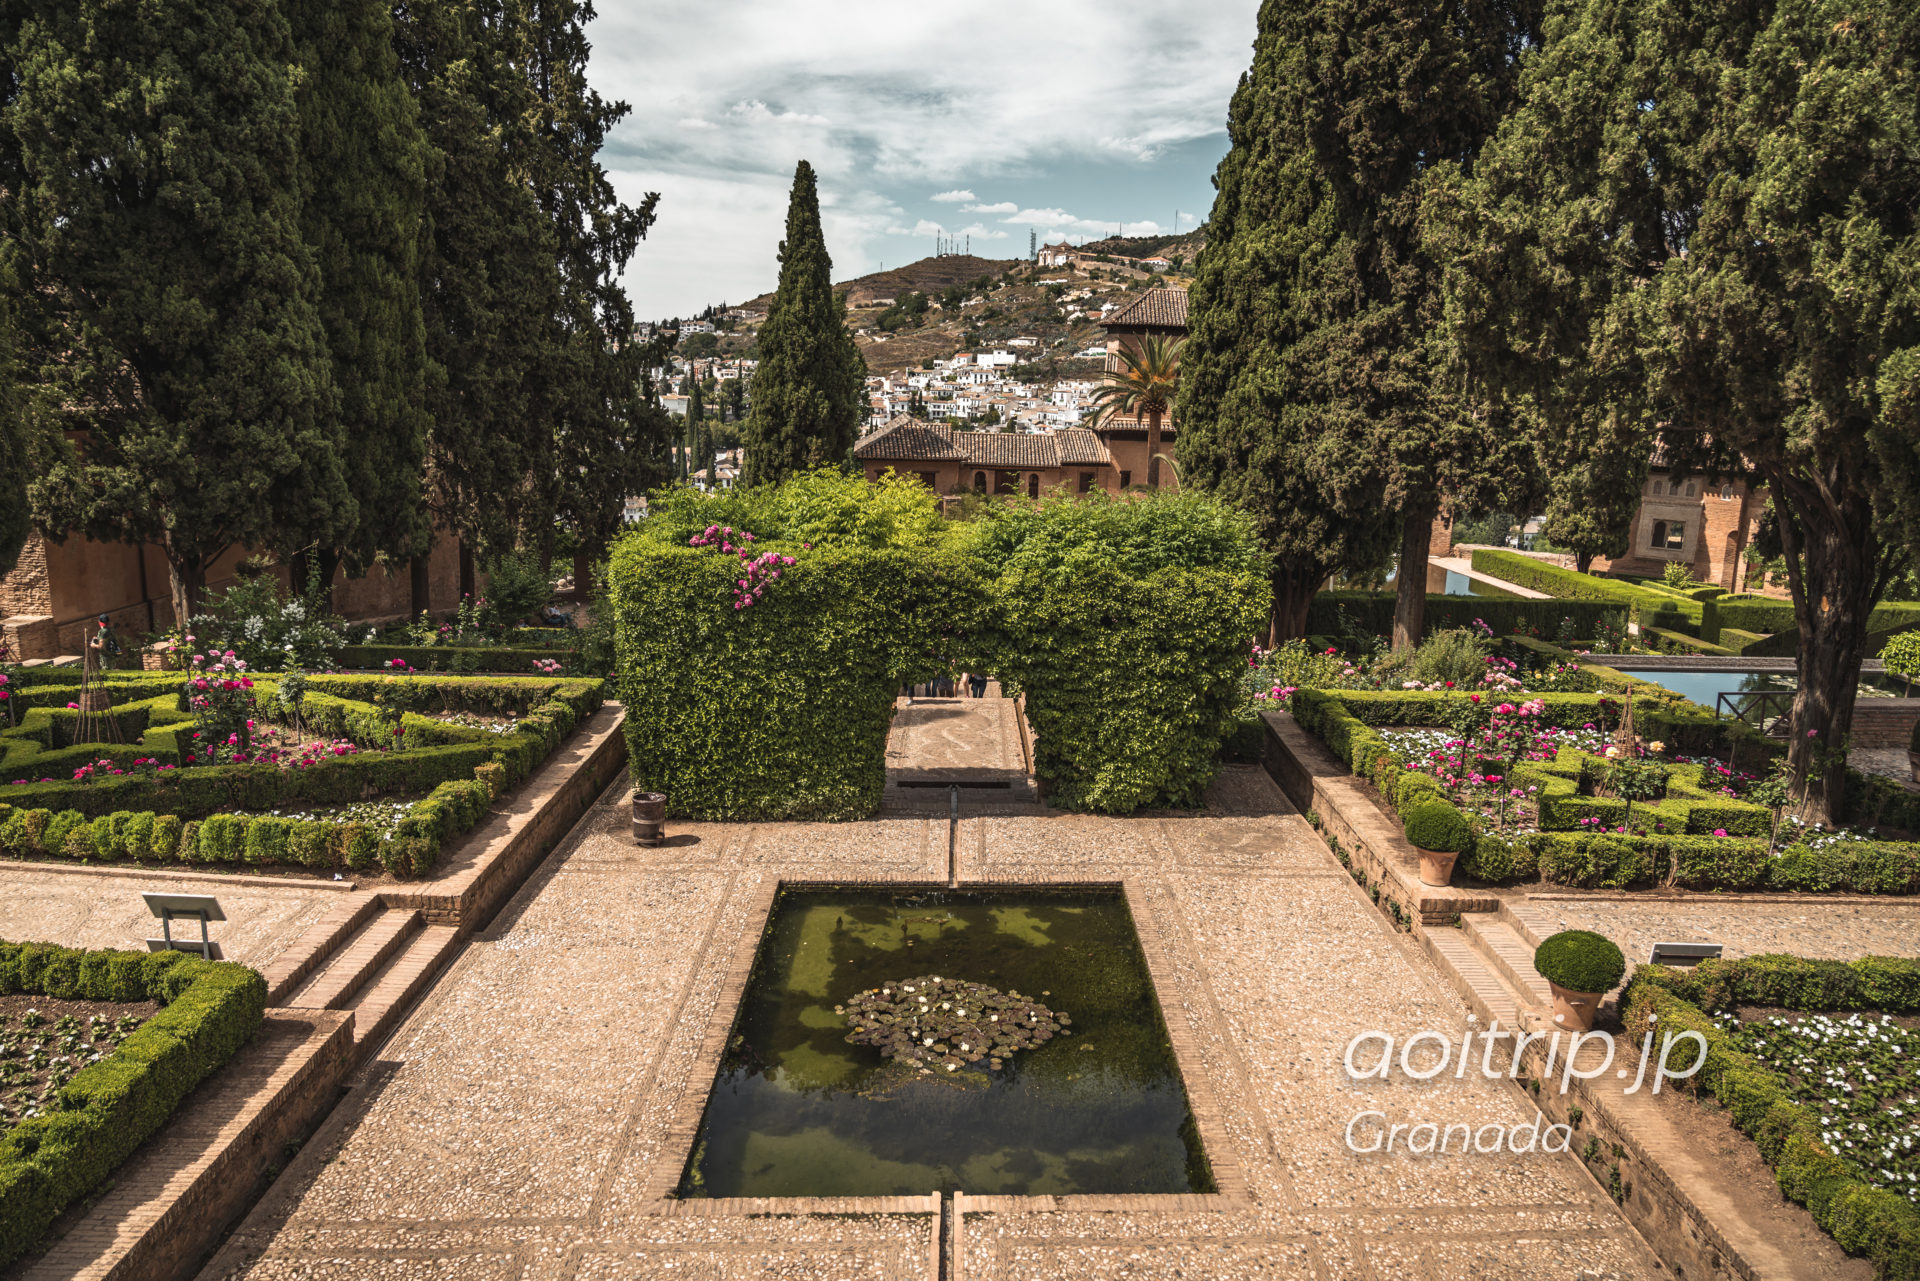 アルハンブラ宮殿のパルタル庭園